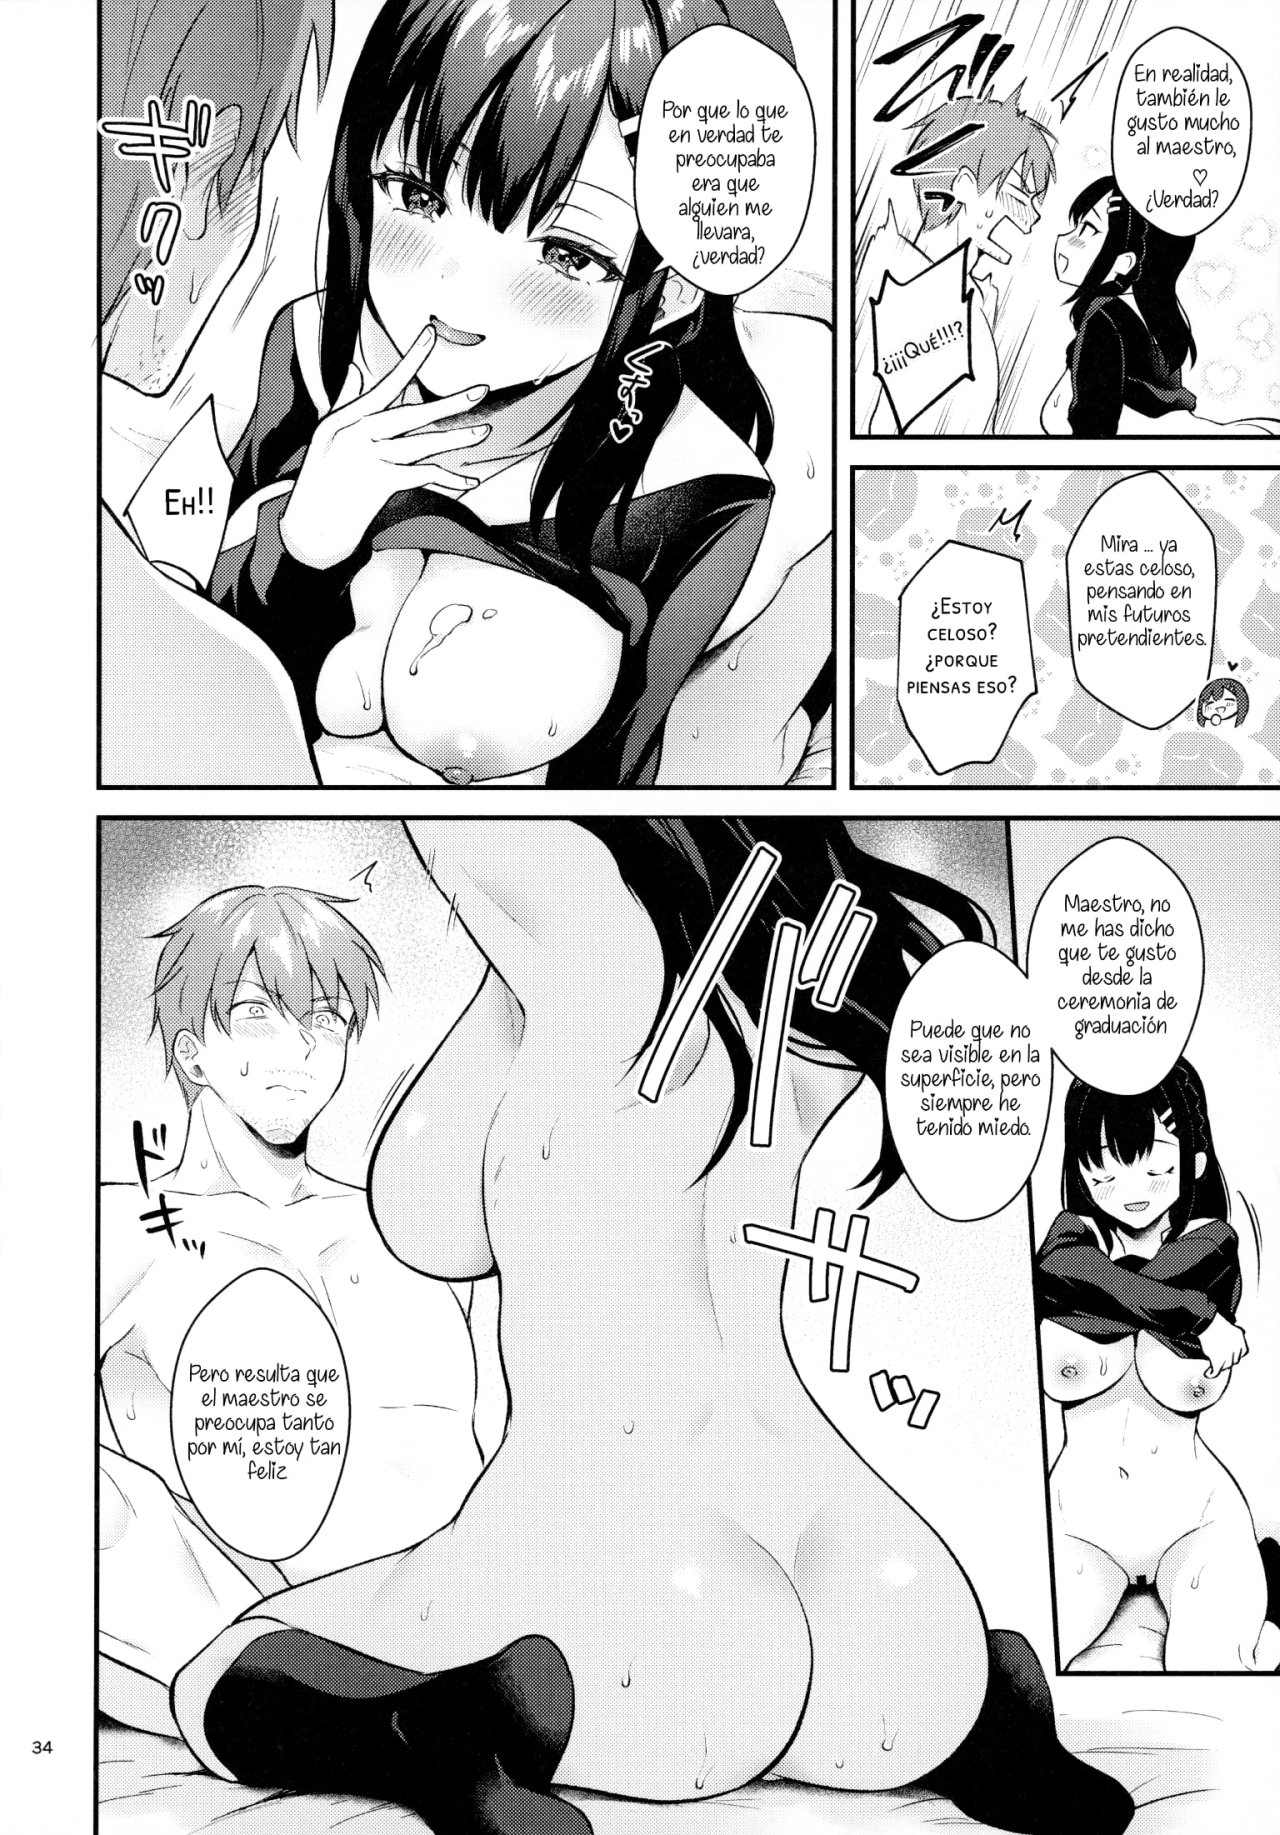 Sunshower-JK Miyako no Valentine Manga 3 - 32